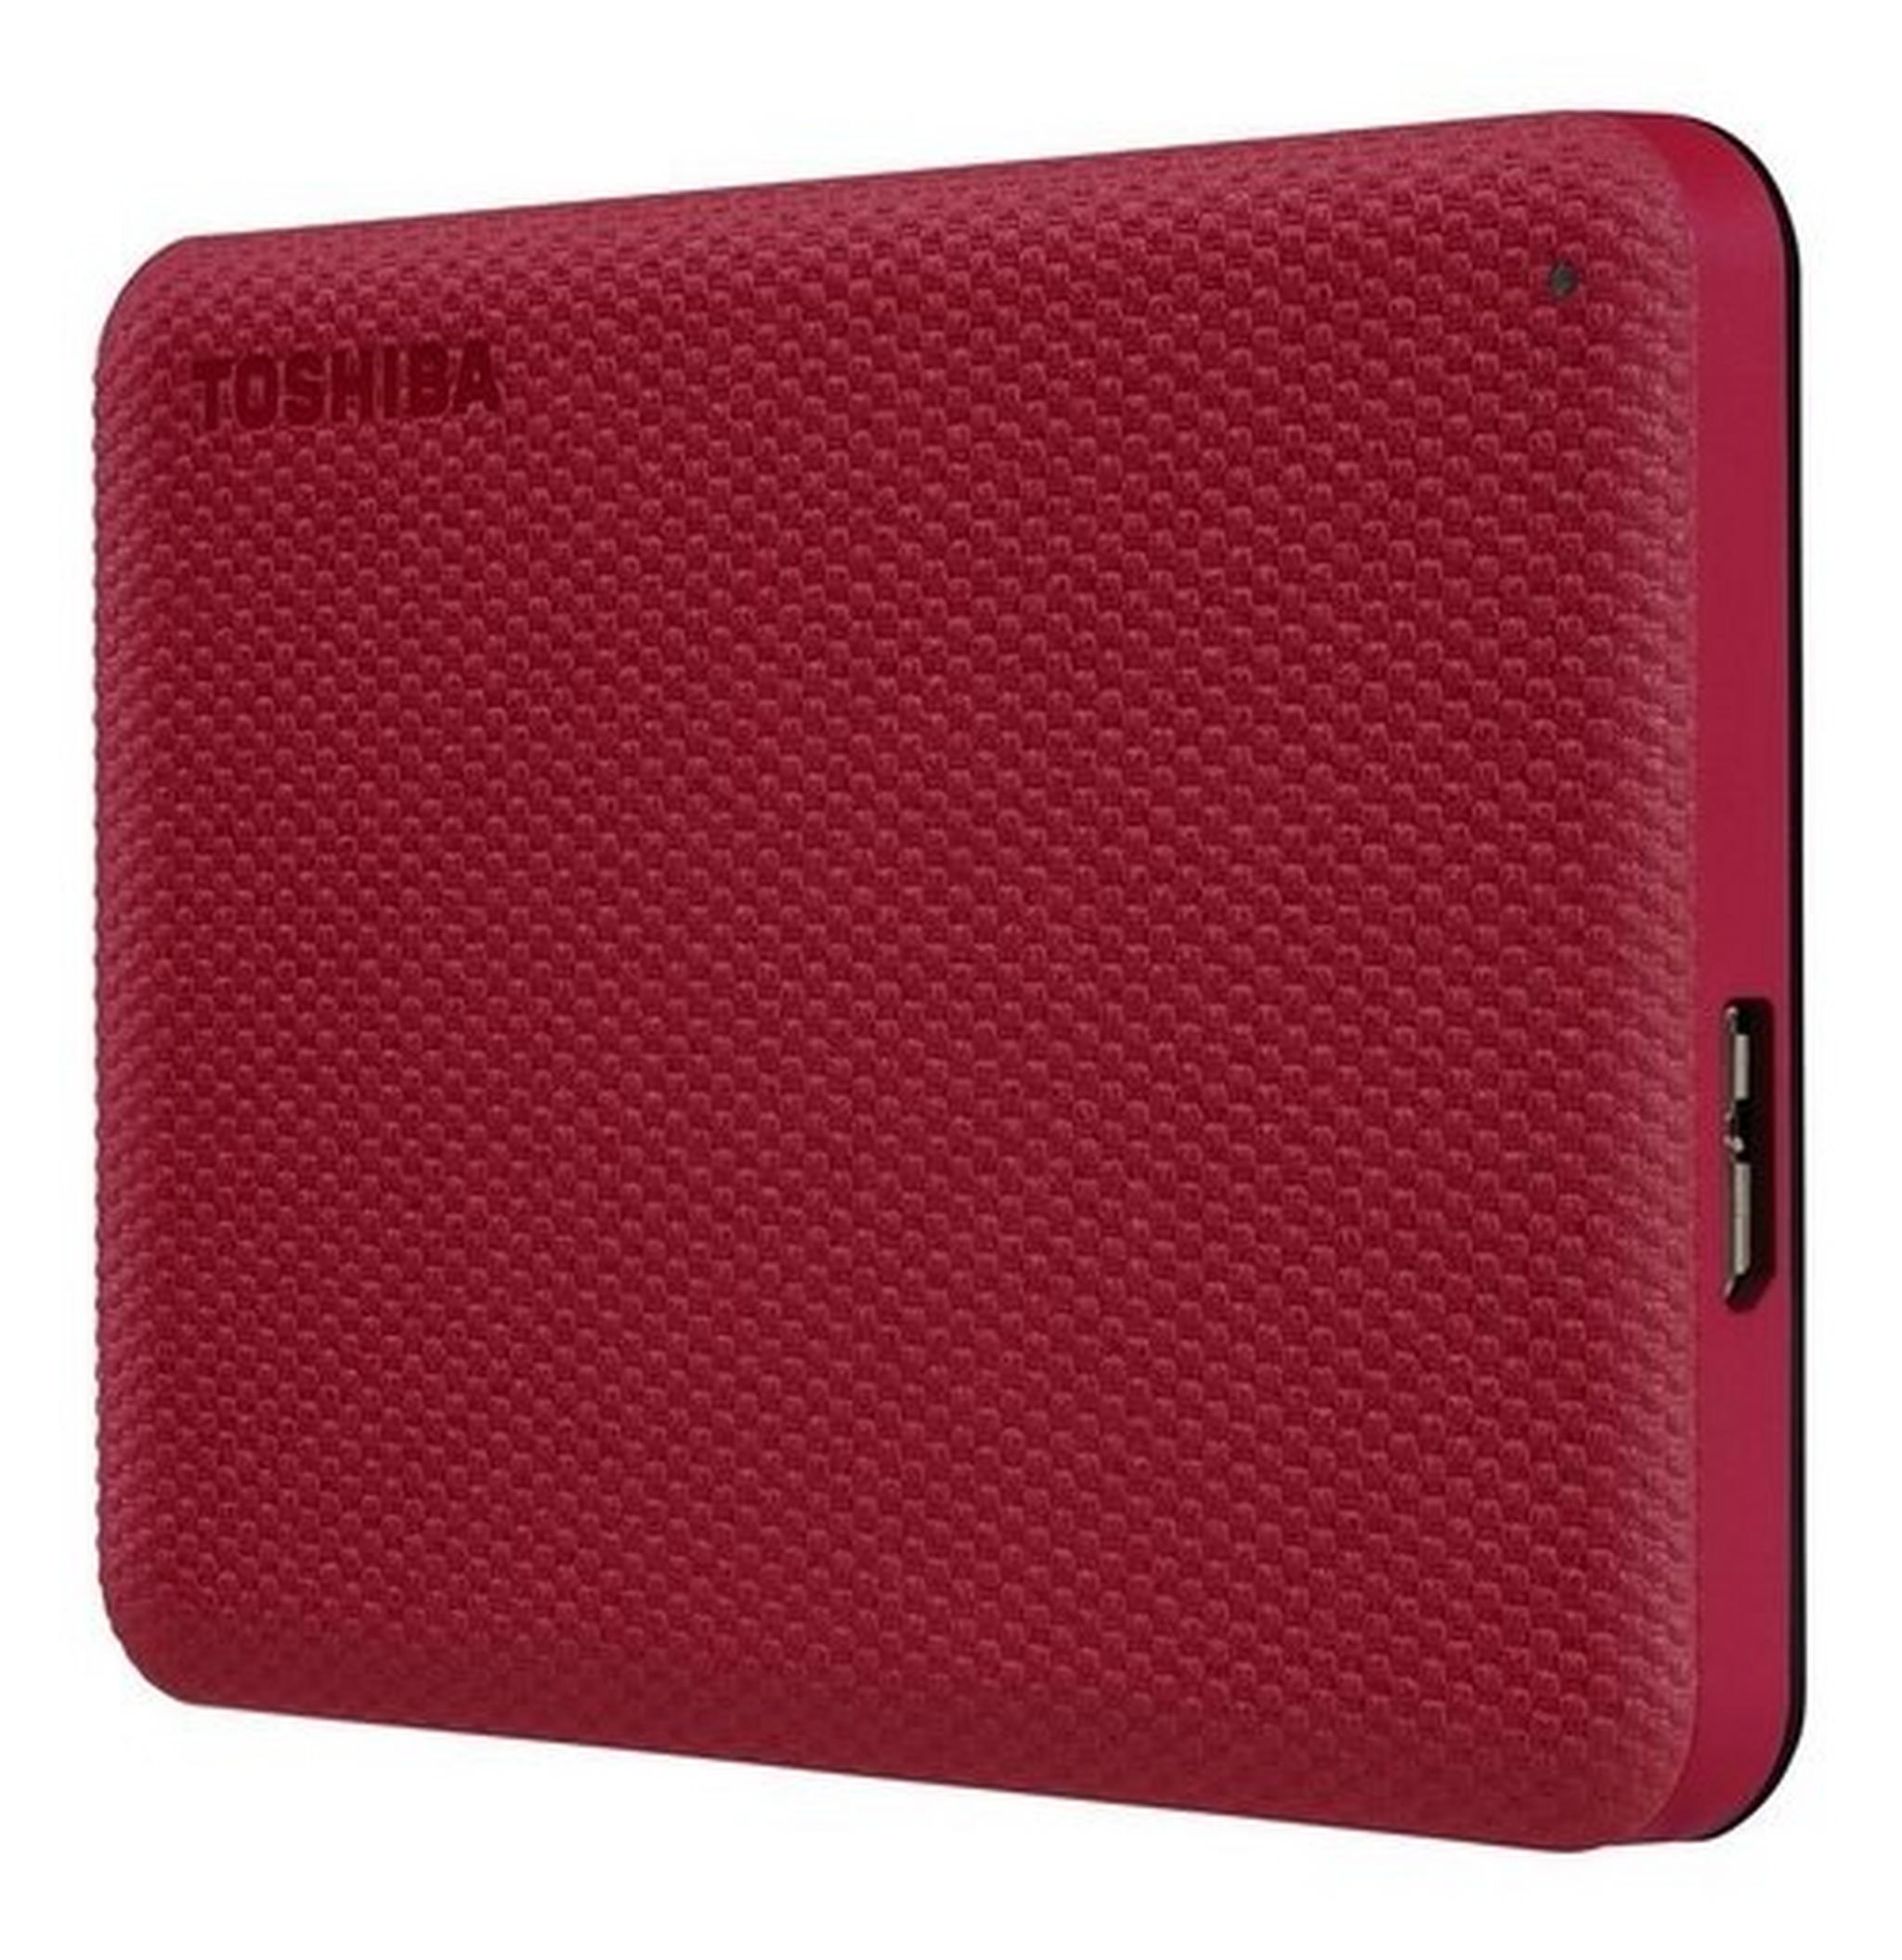 Toshiba Canvio Advance 1TB Hard Drive (HDTCA10ER3AA) - Red